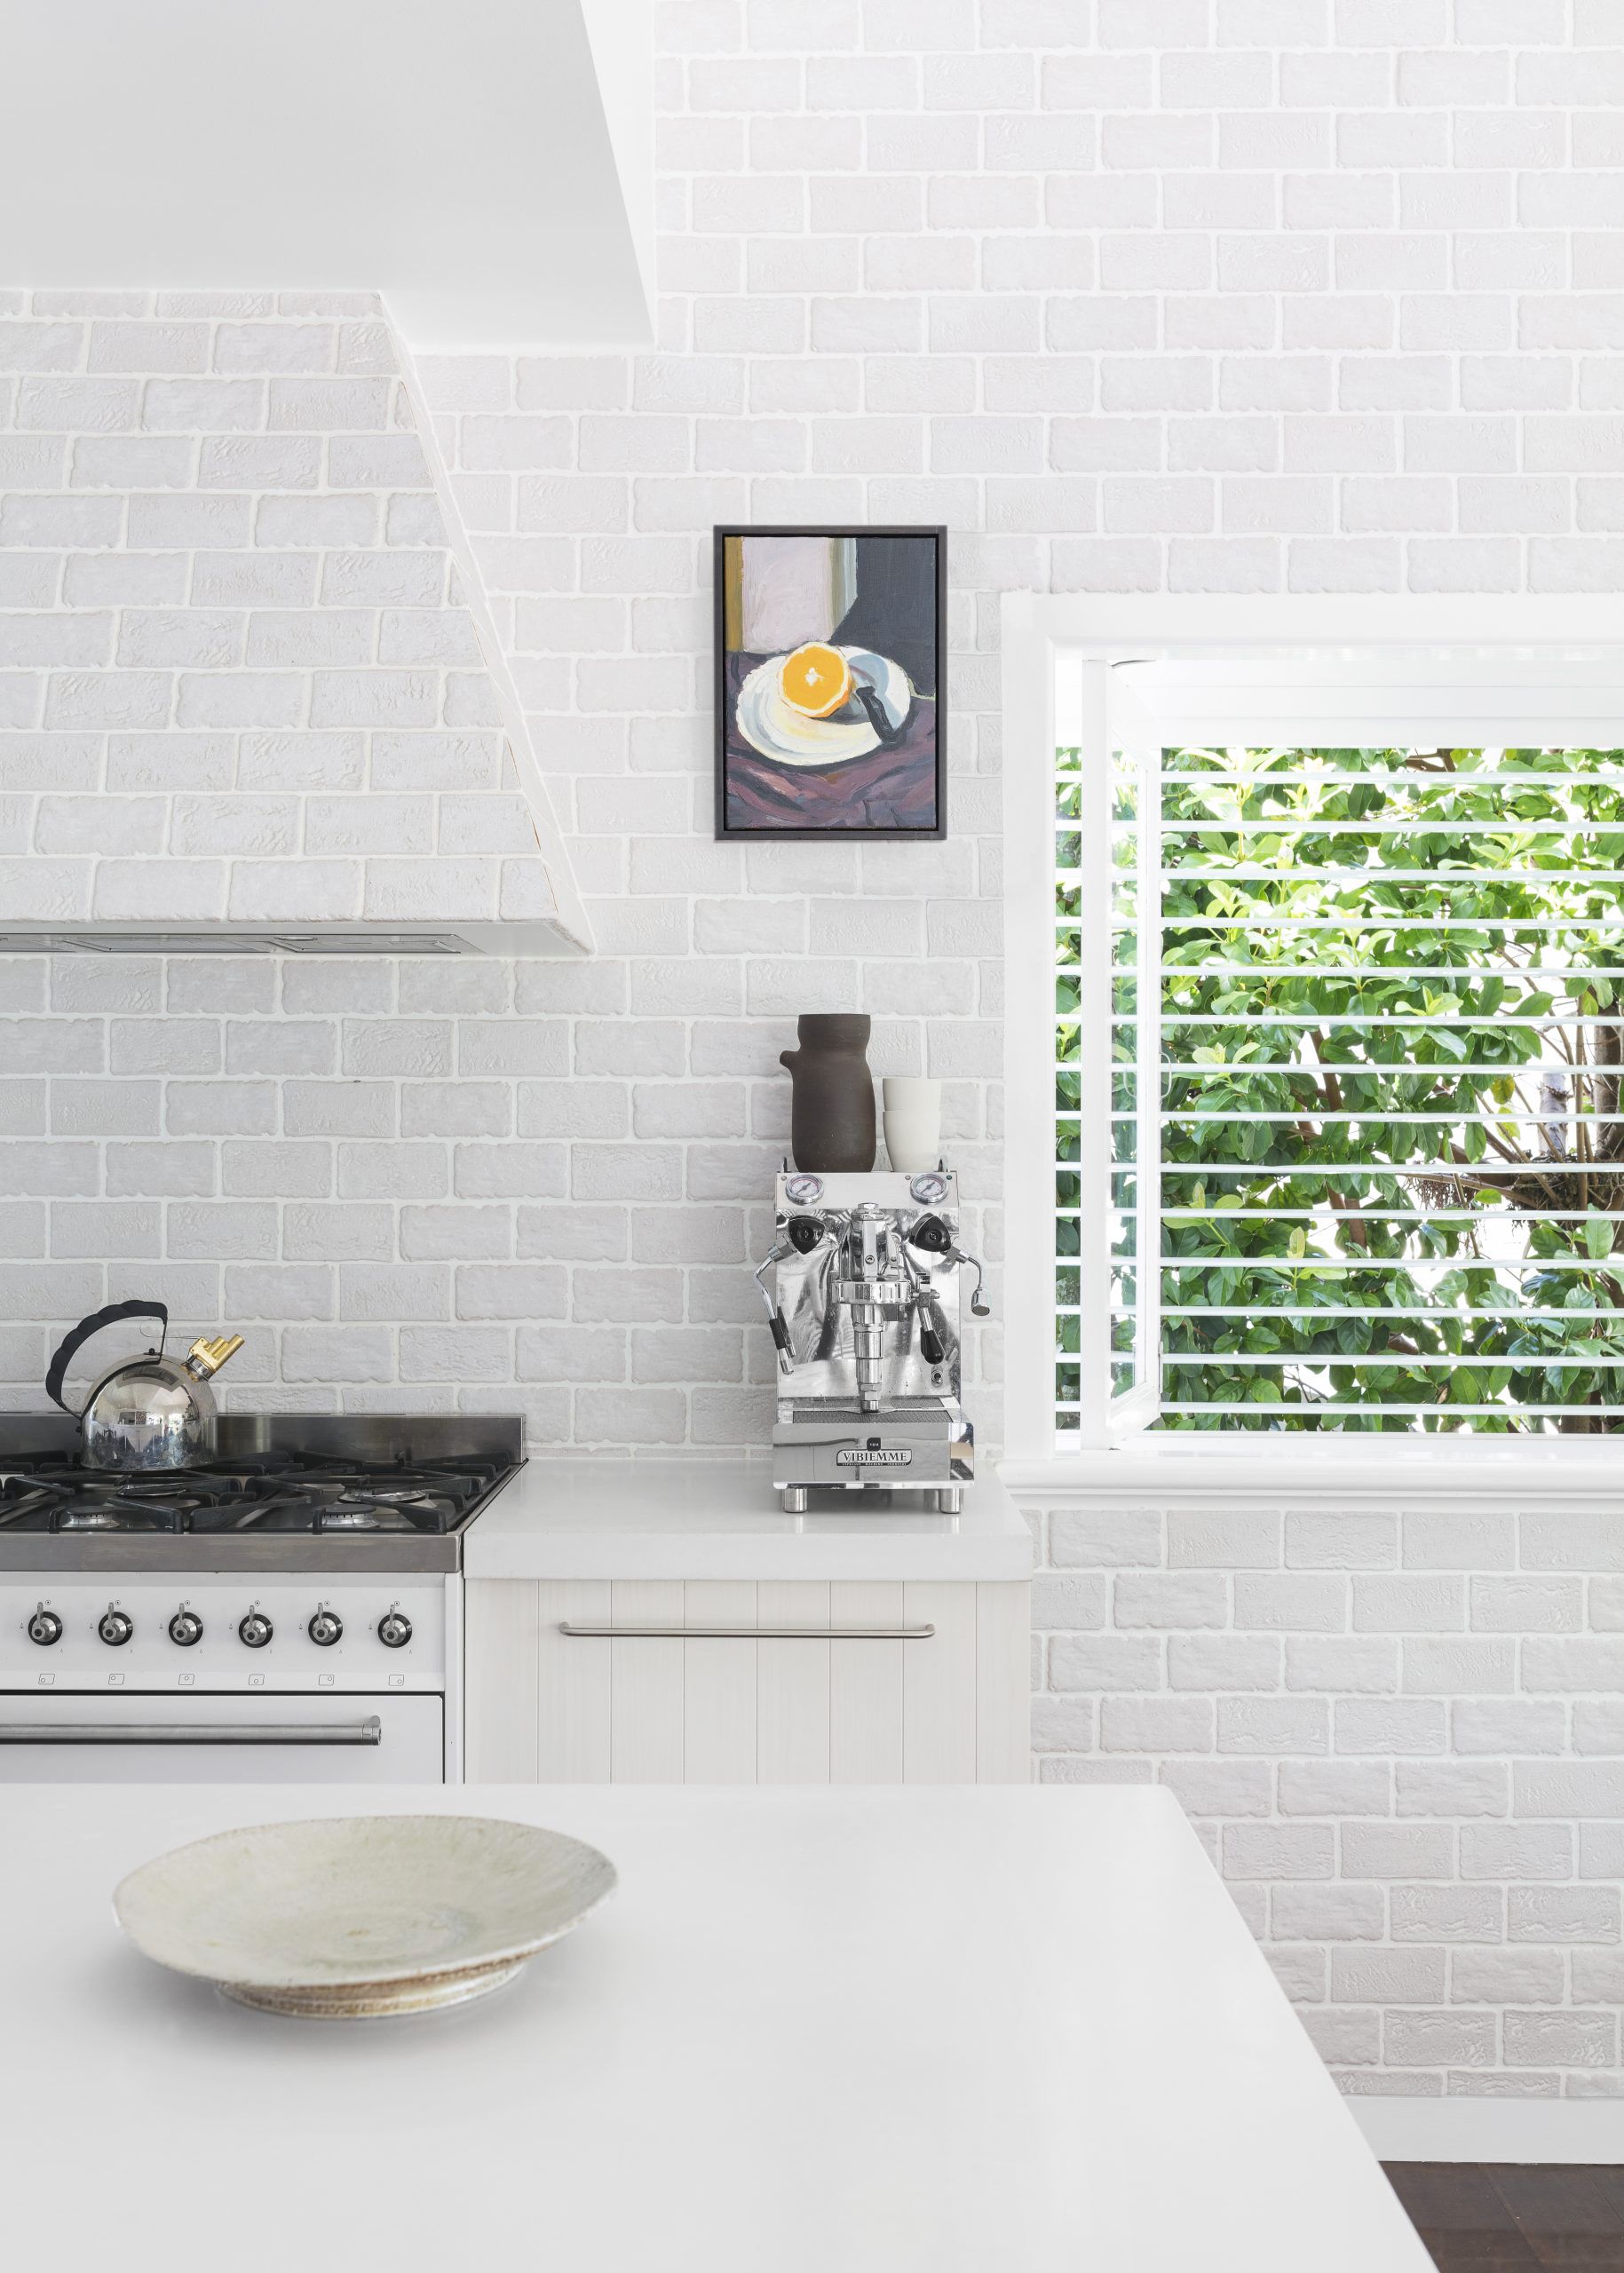 12 Kitchen Curtain Ideas Stylish Kitchen Window Treatments